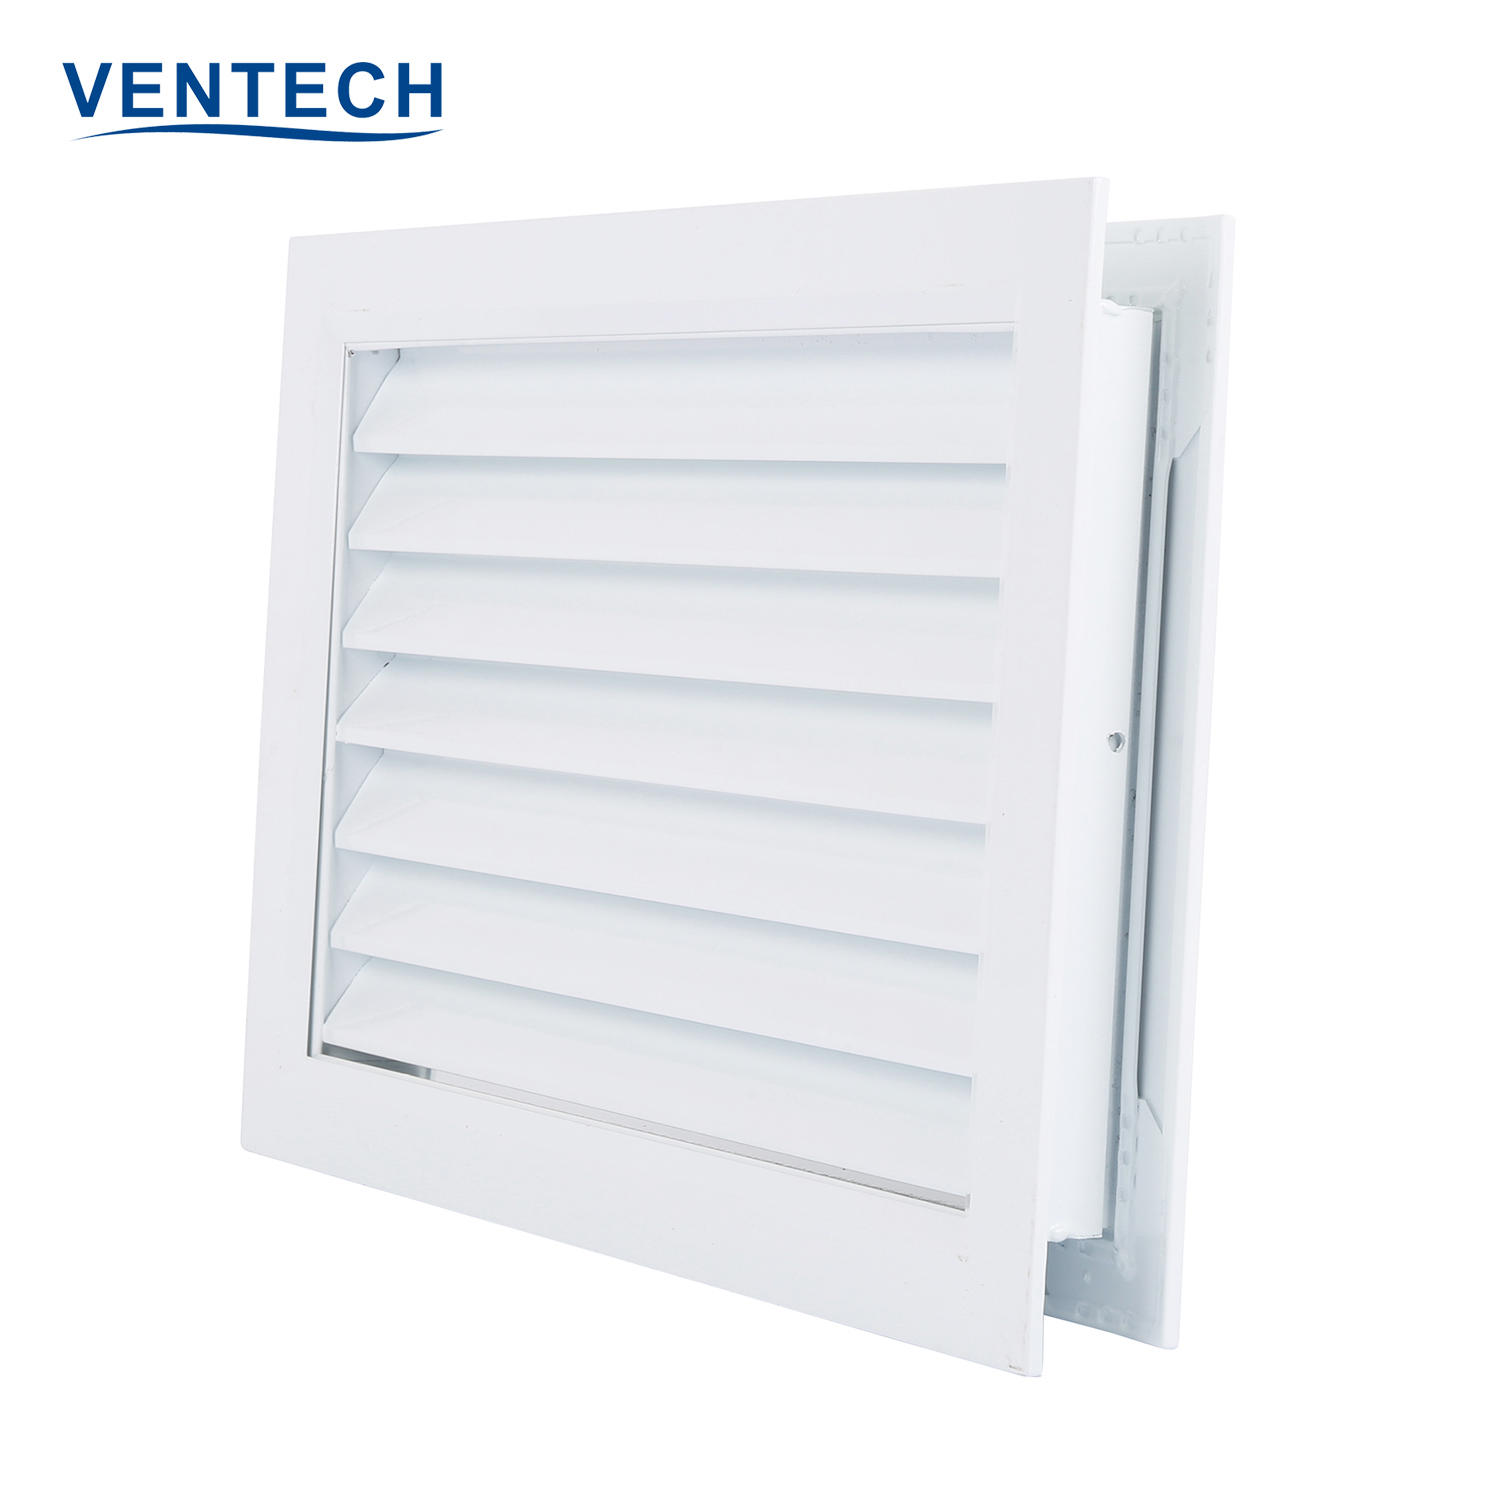 Hvac System Air Ventilation Aluminium Adjustable Return Air Vent Door Grille